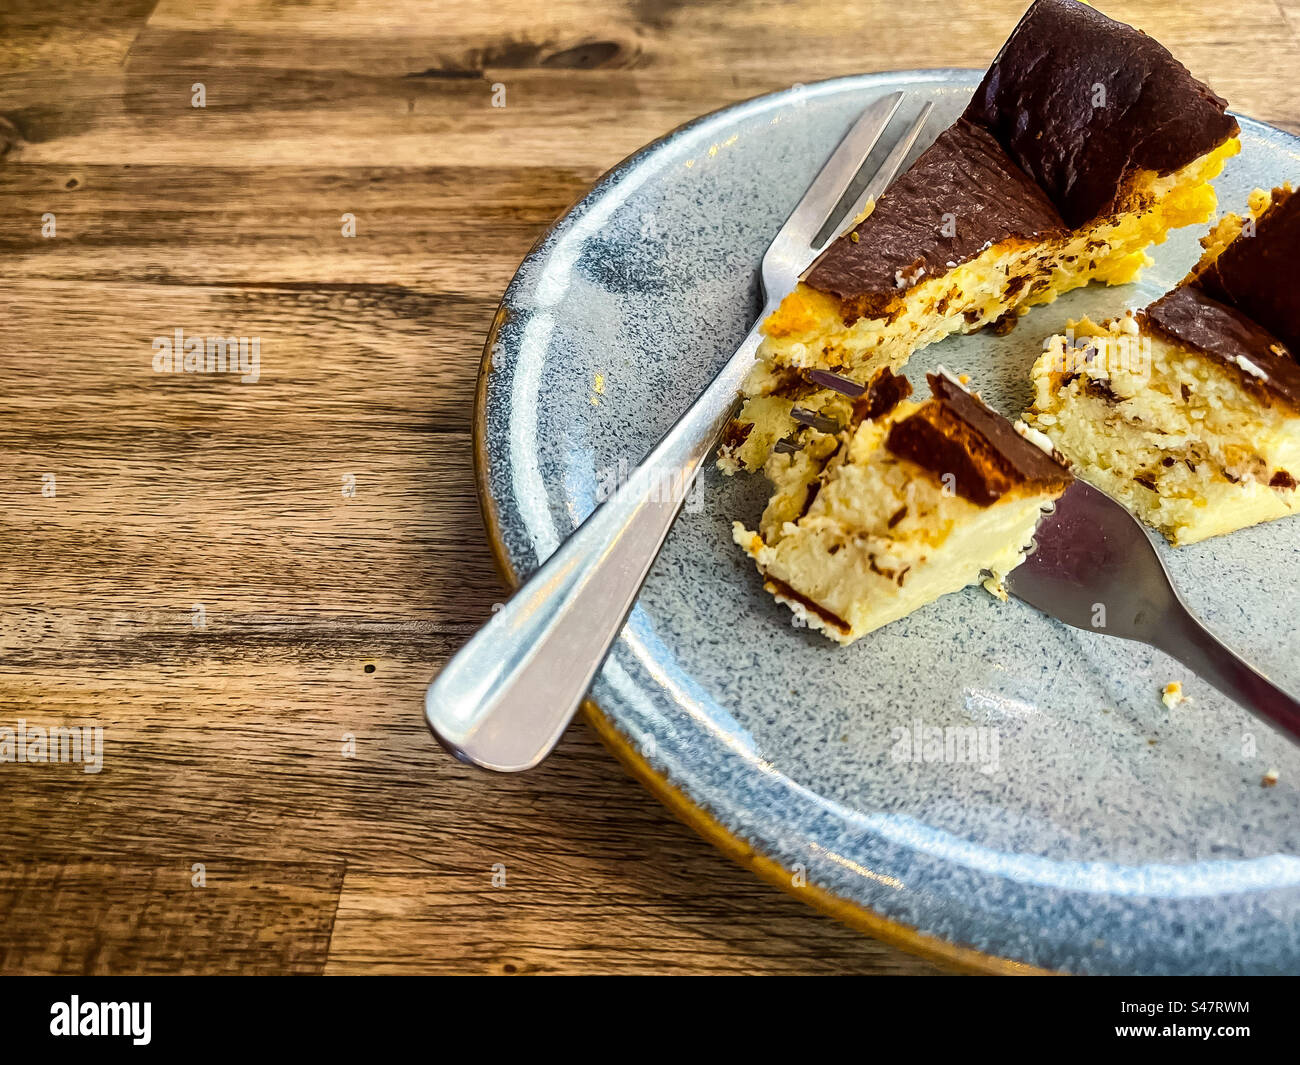 Primo piano di una fetta di cheesecake basca tagliata con due forchette sul piatto su un tavolo di legno. Toni marroni. Foto Stock